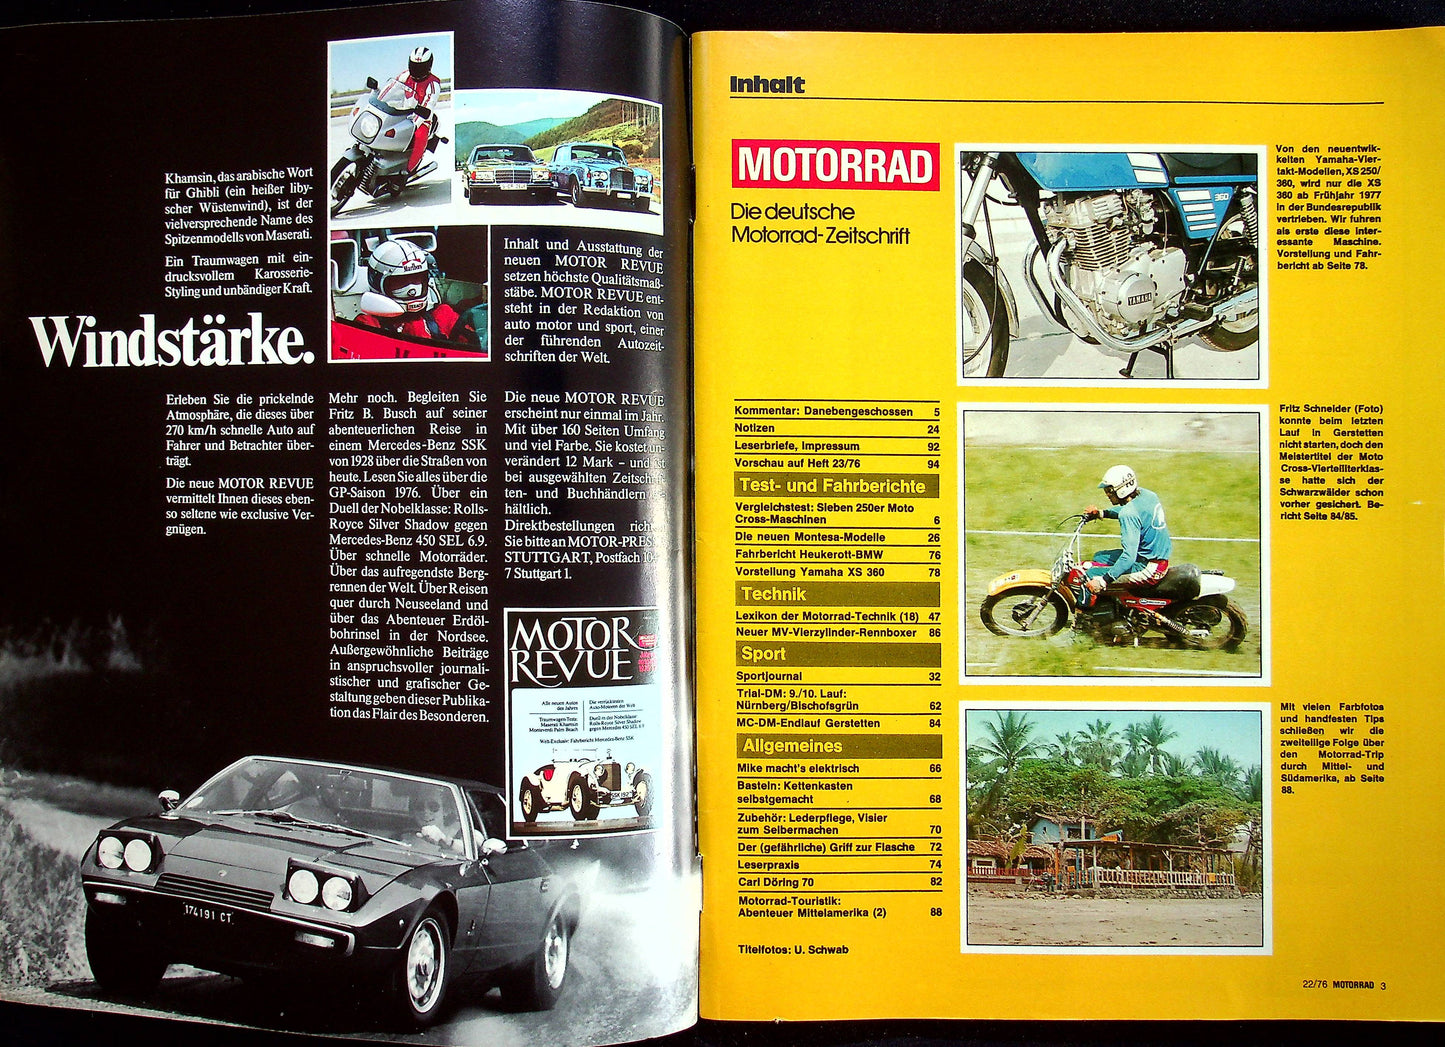 Motorrad 22/1976